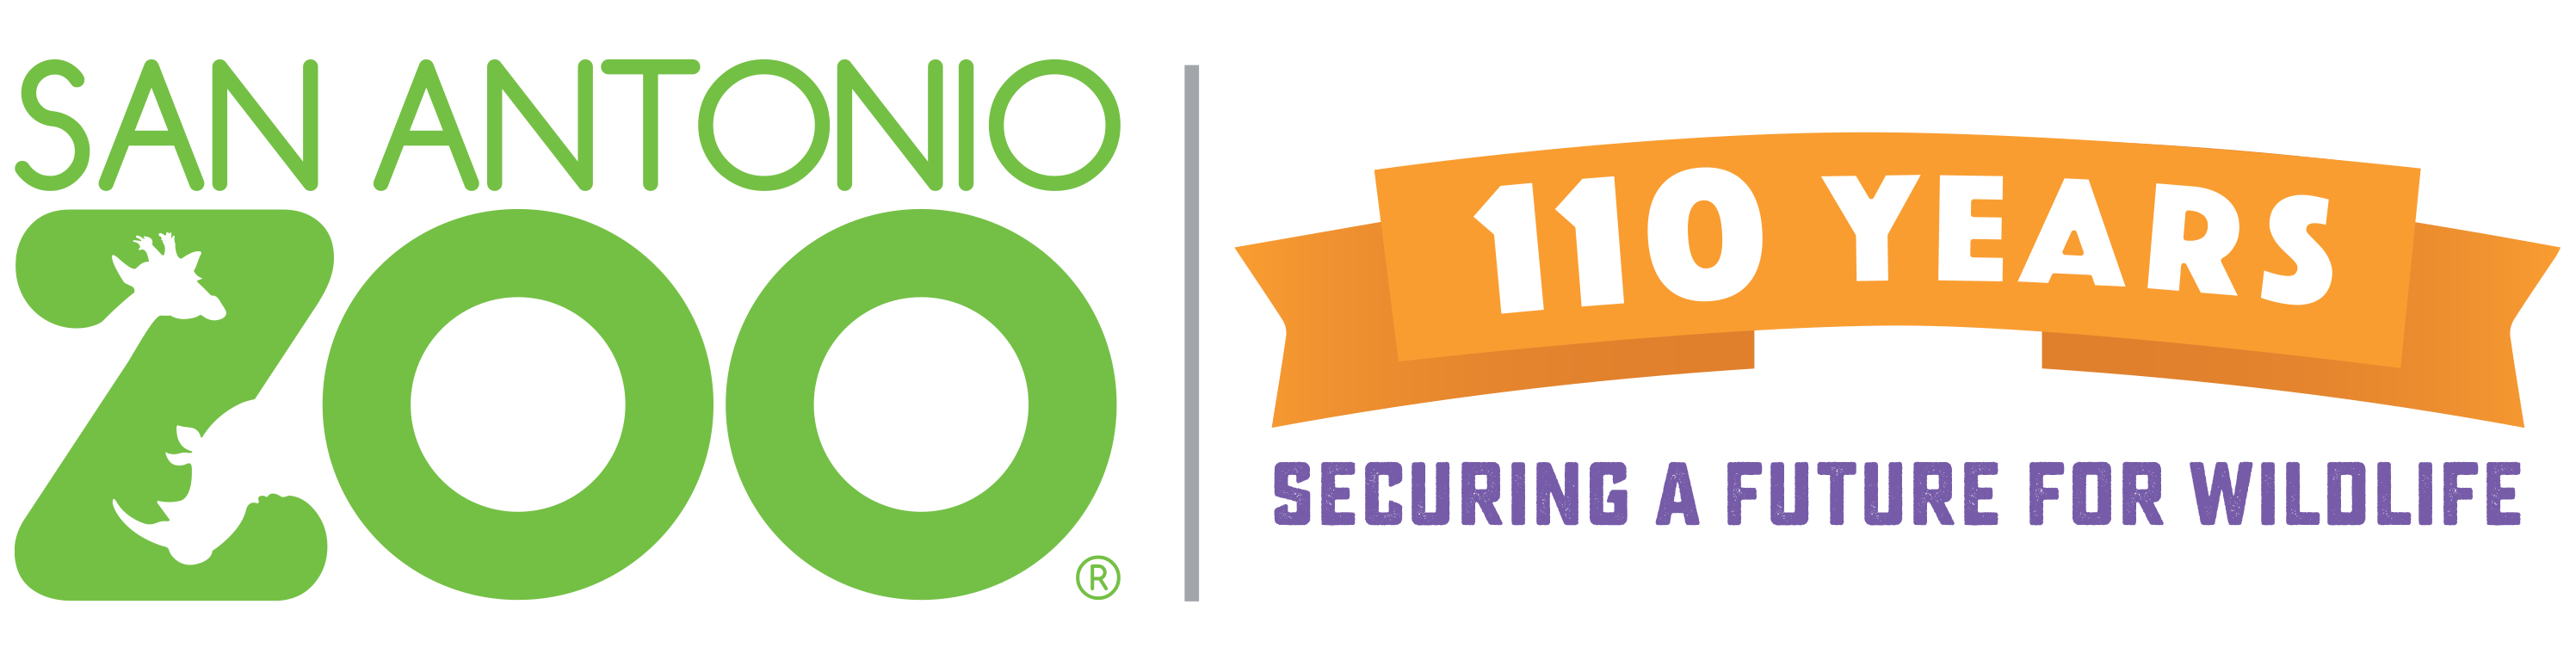 a green logo for San Antonio Zoo